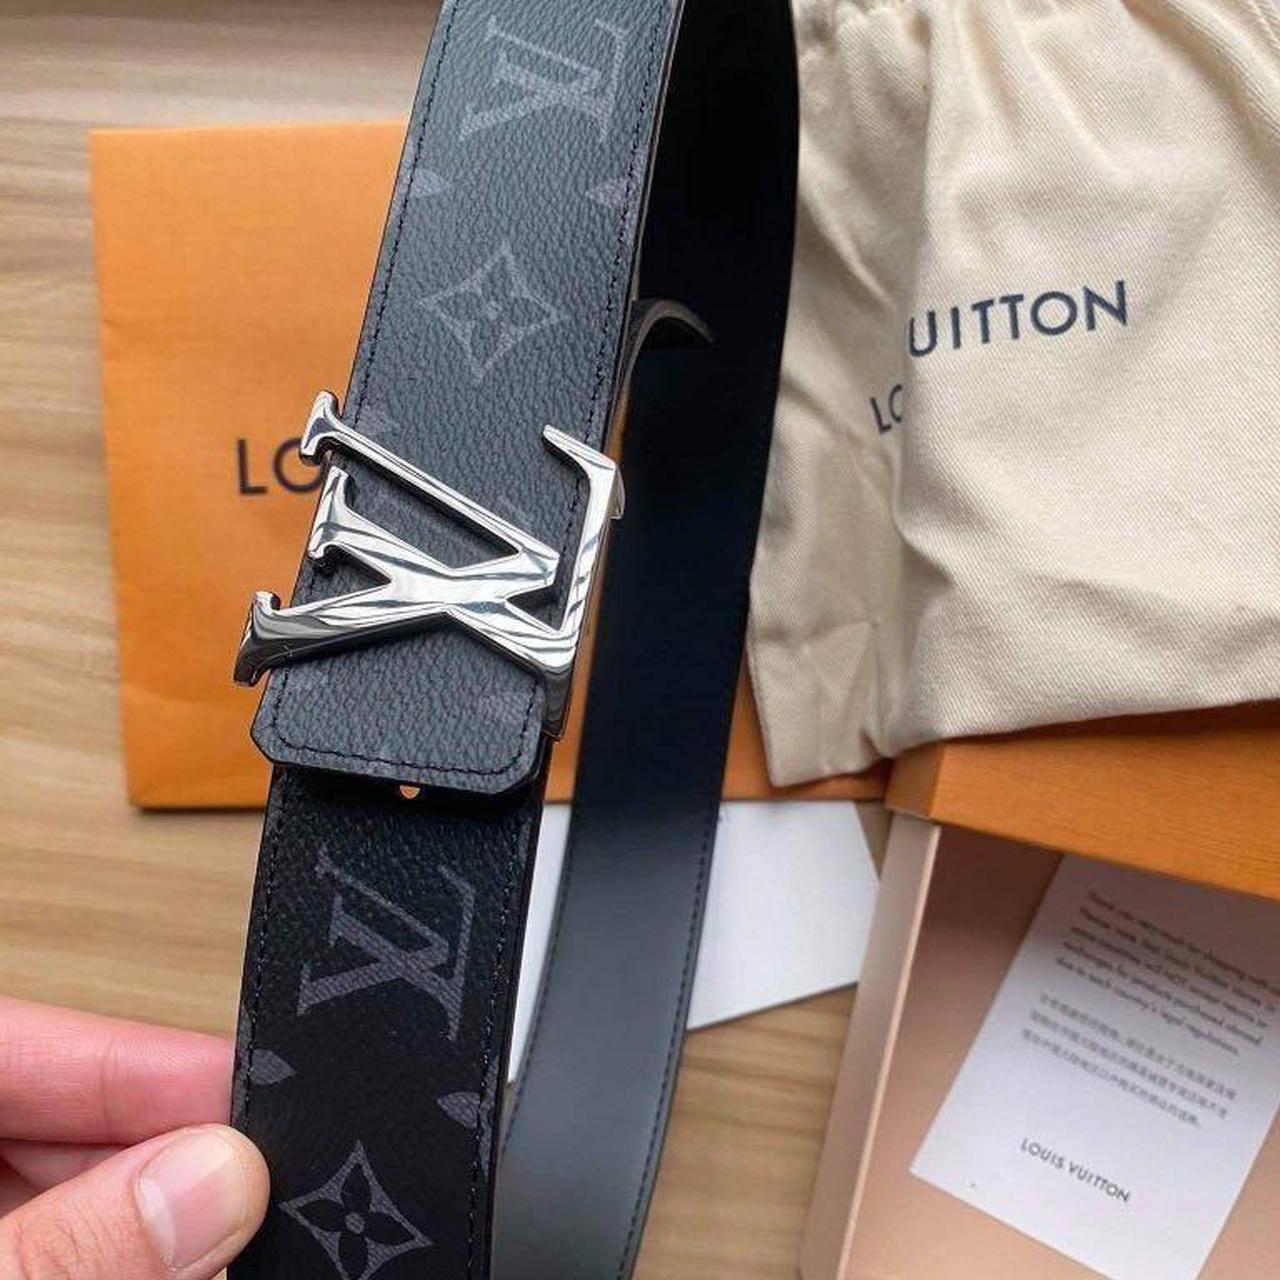 Louis Vuitton Mens Belt, size: 95mm or pant size 38. - Depop